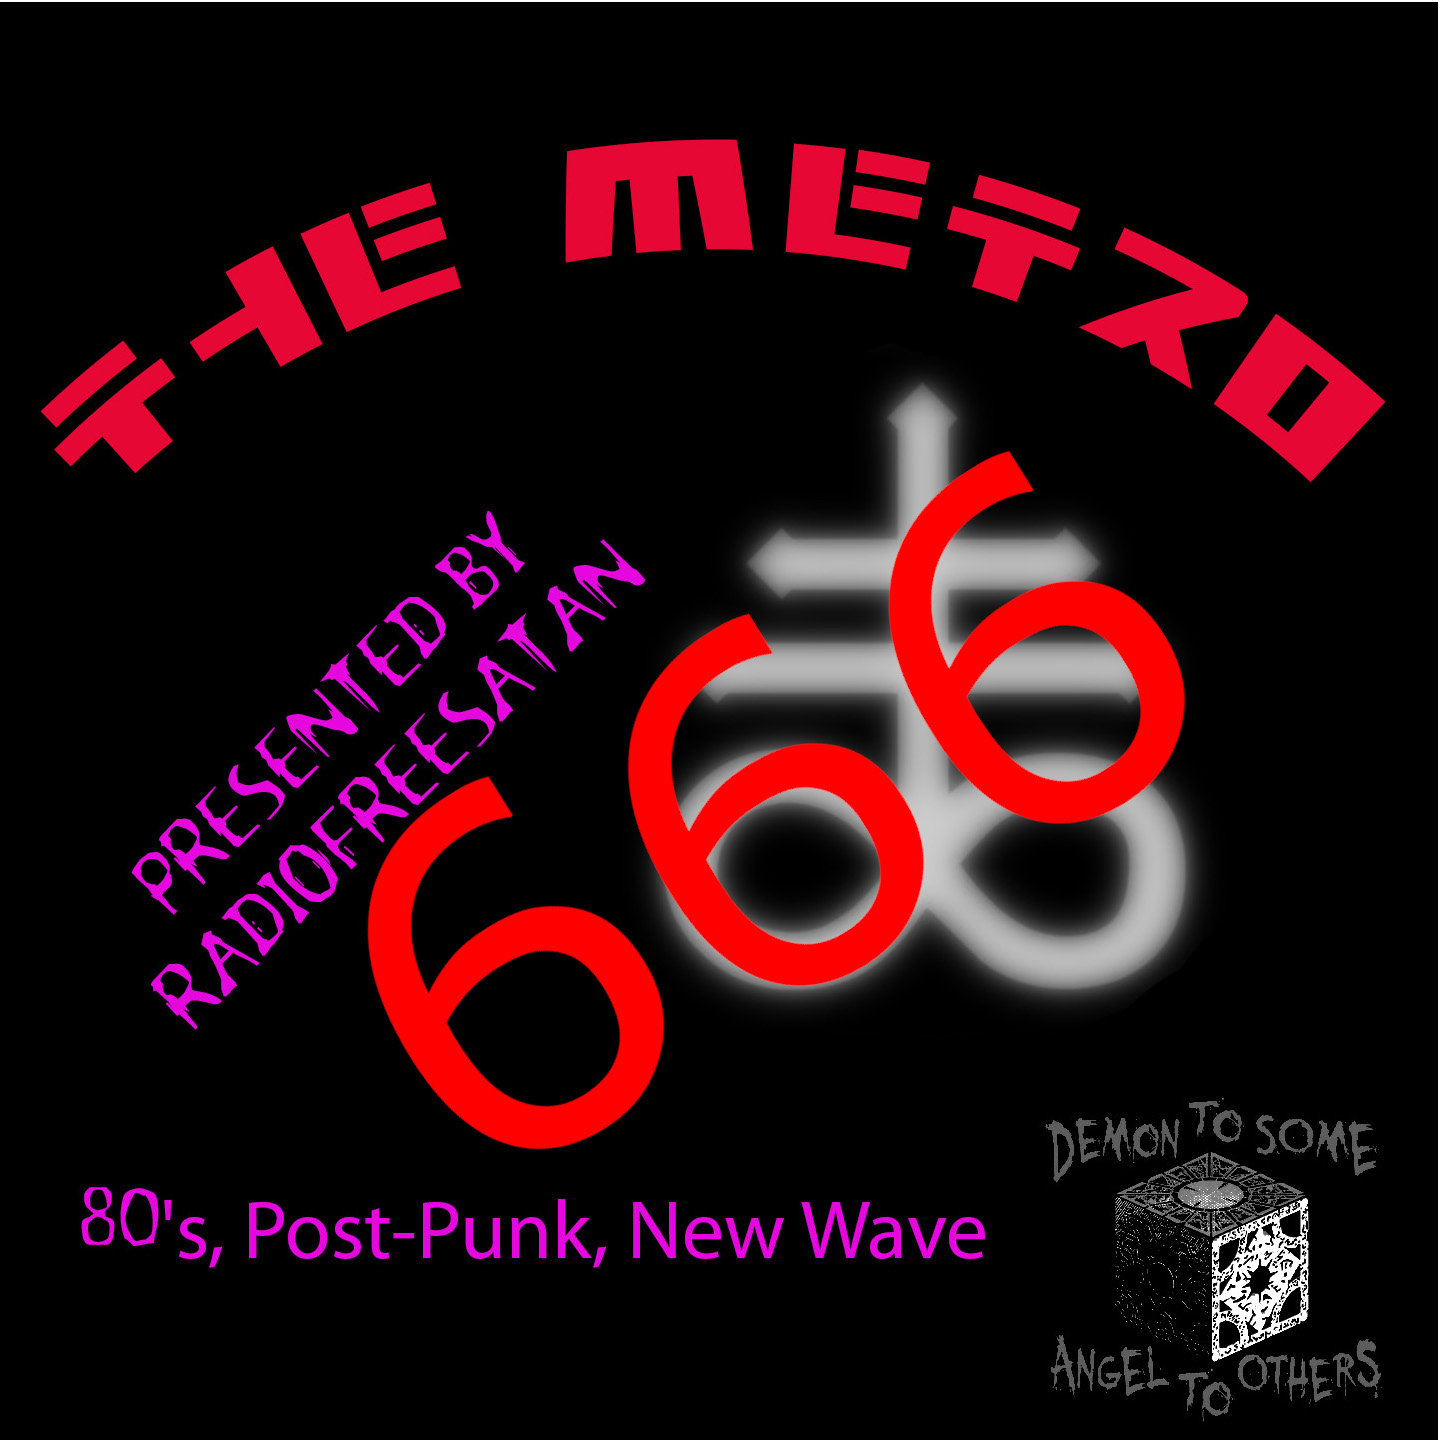 The Metro #666